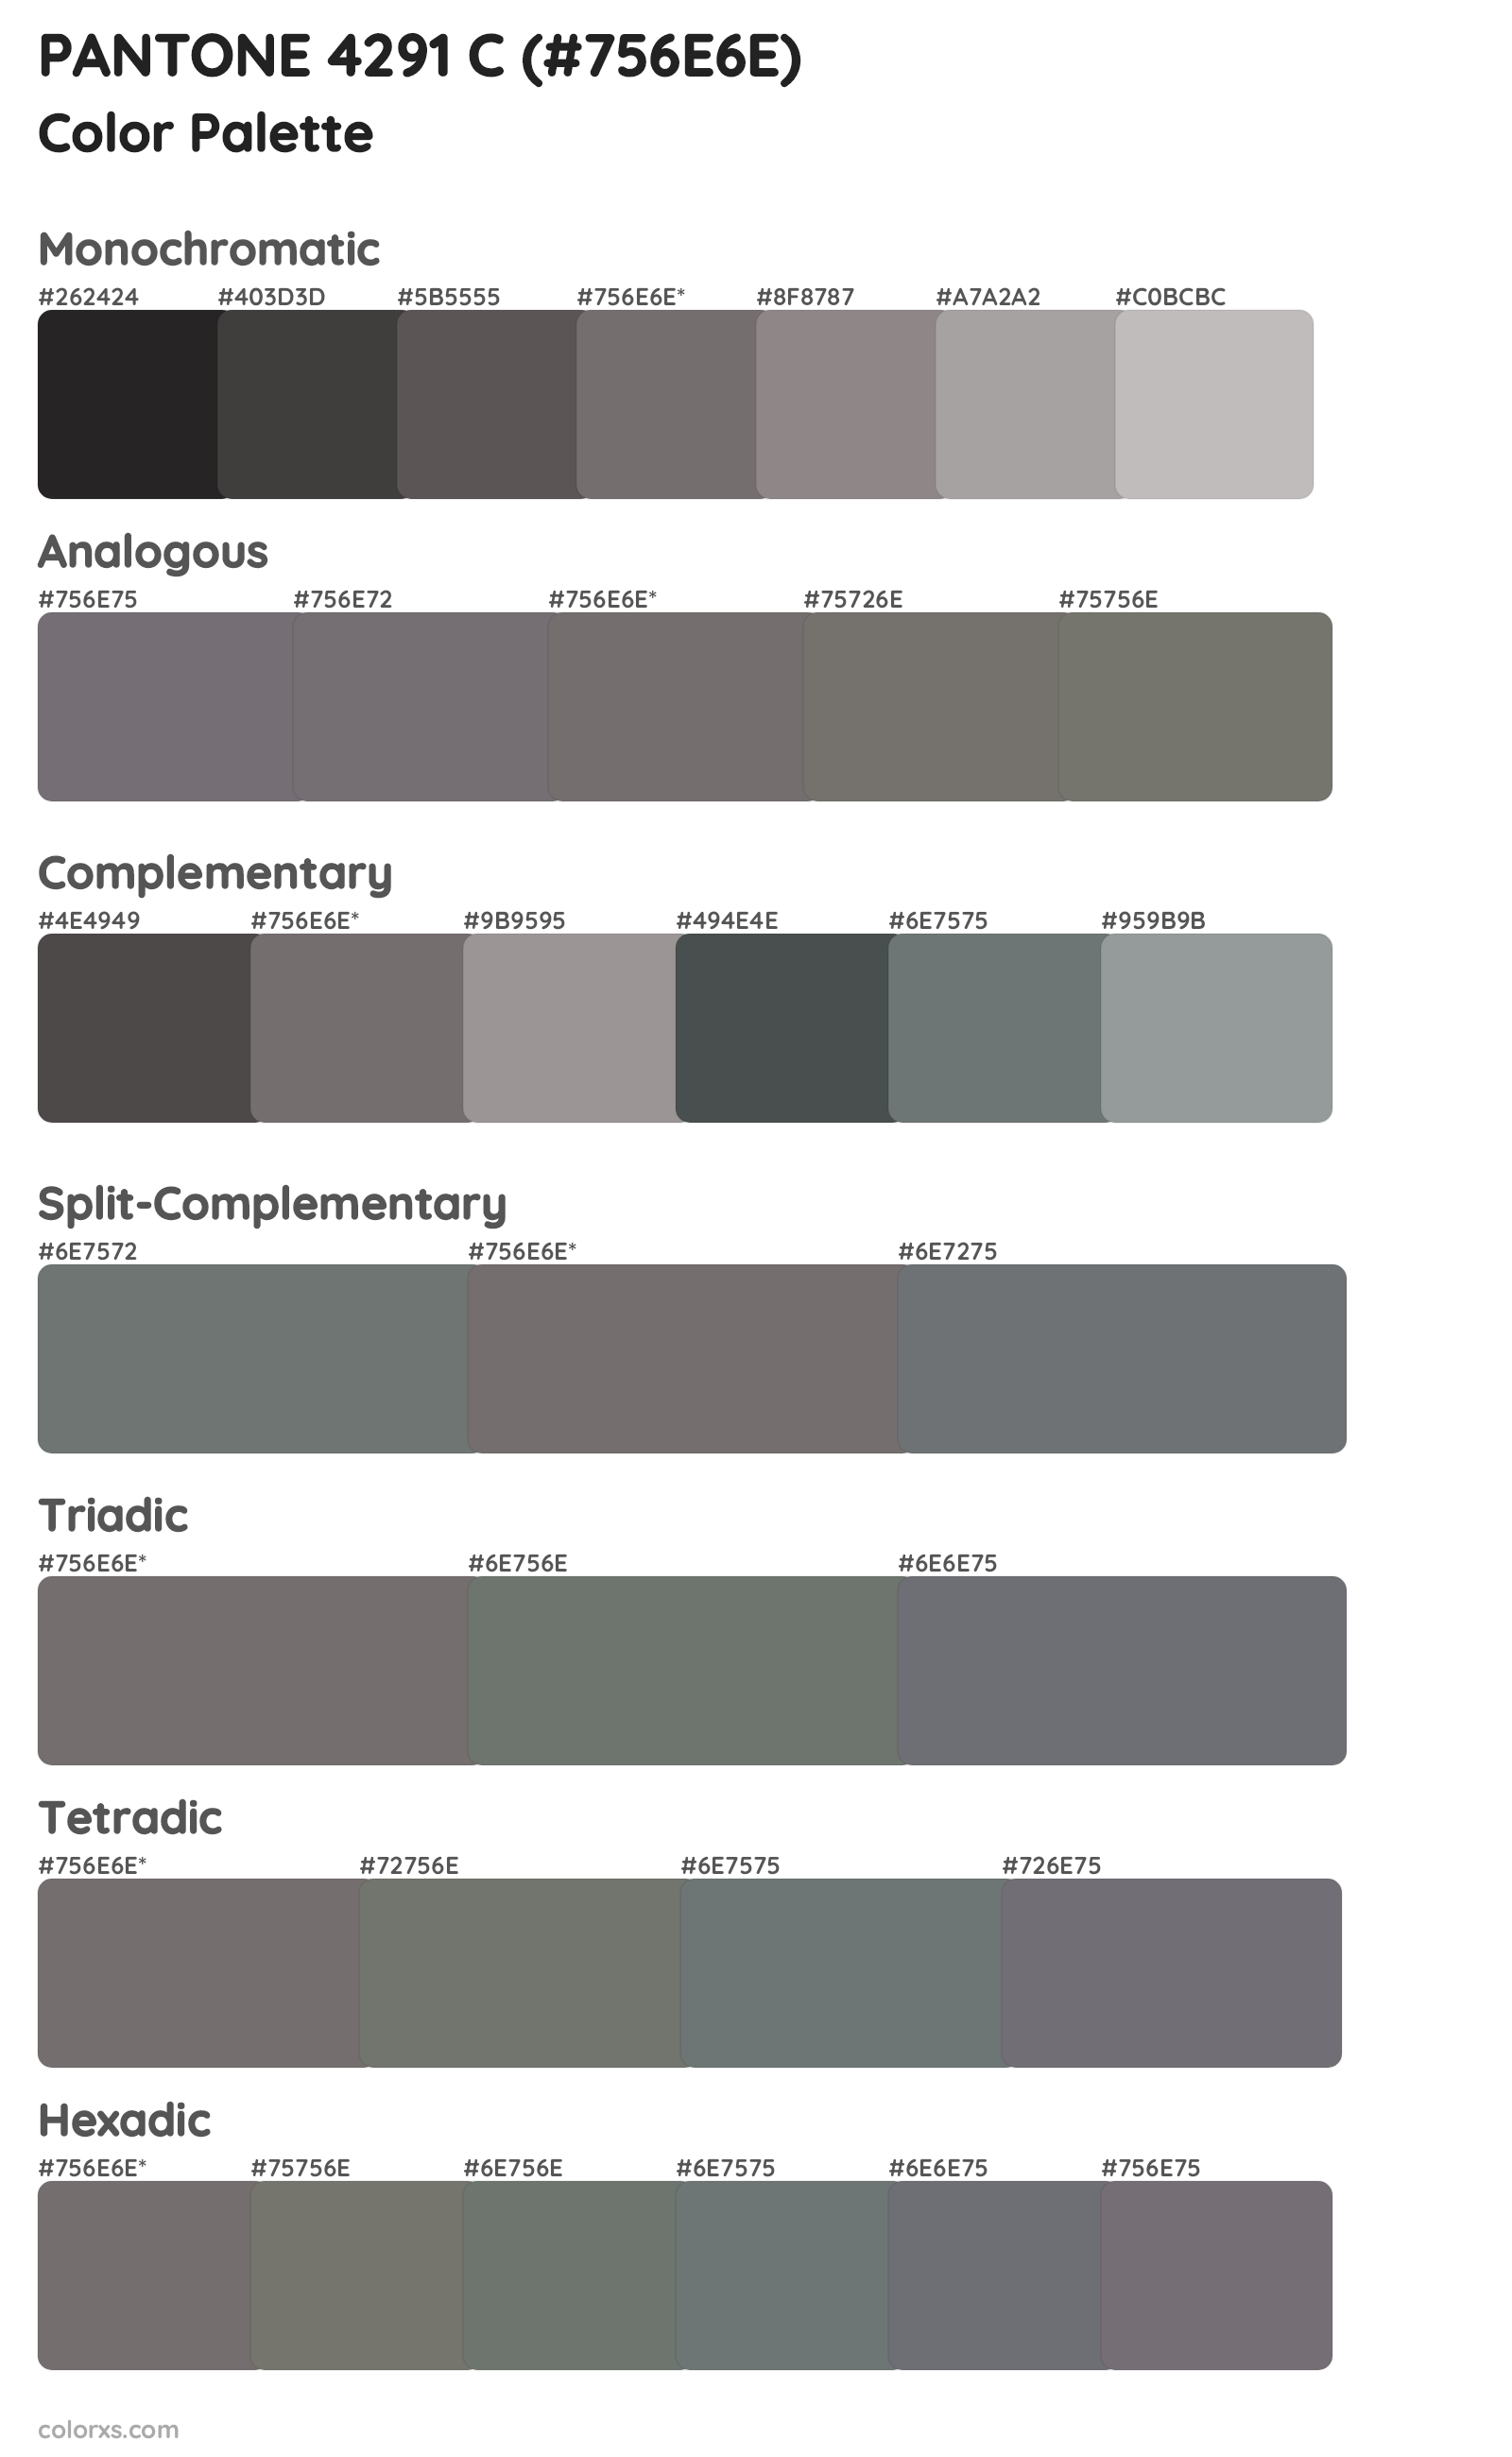 PANTONE 4291 C Color Scheme Palettes